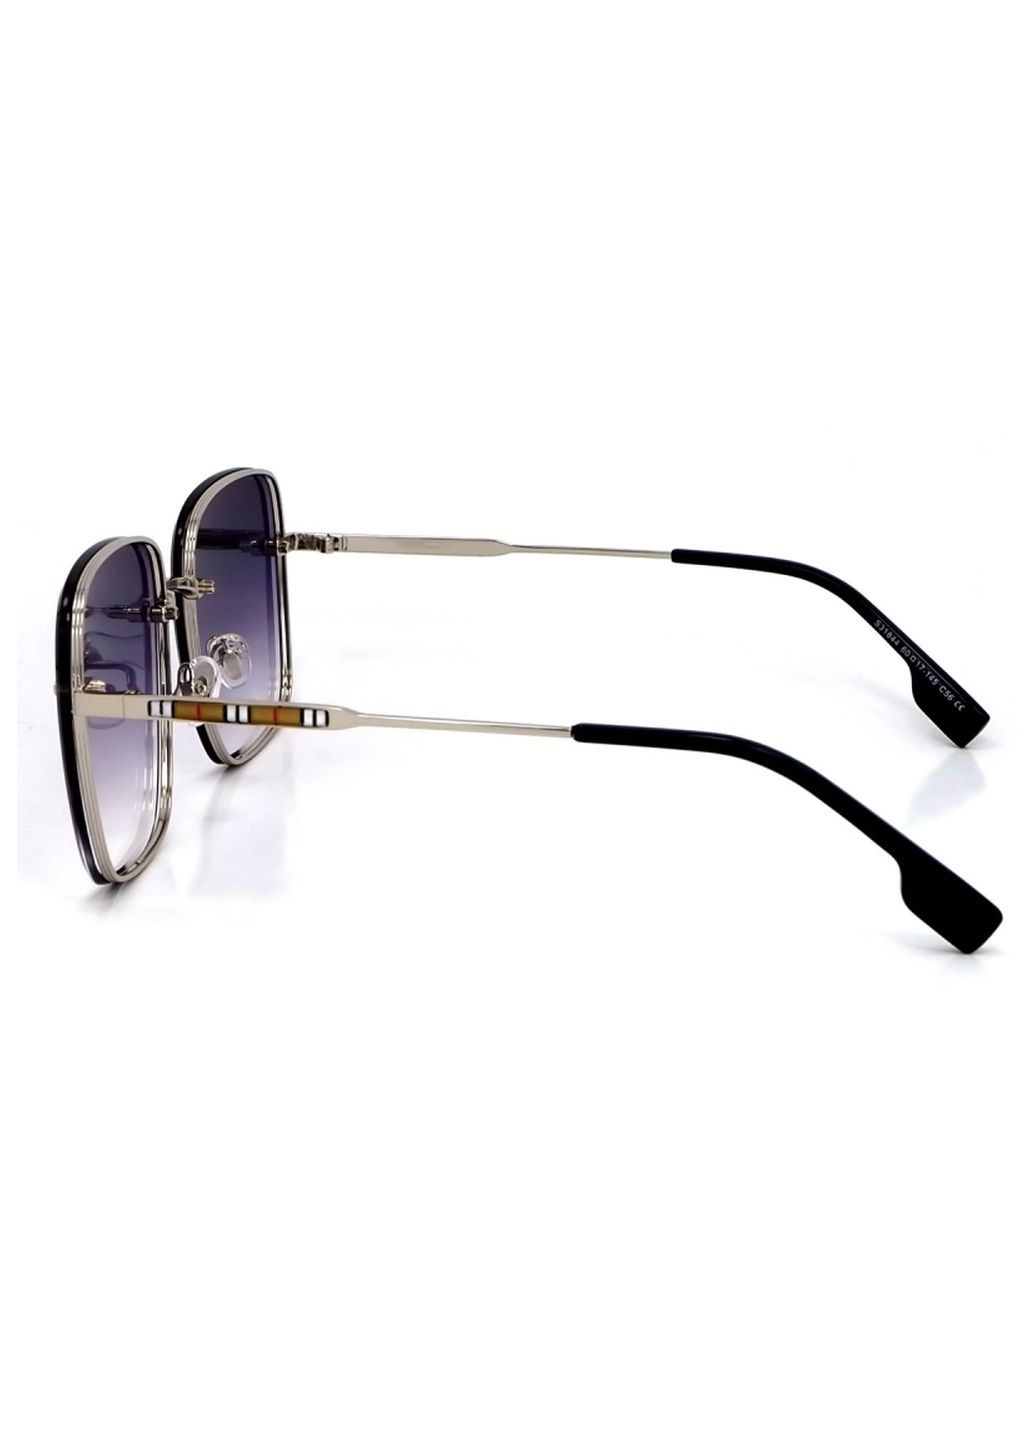 Купить Женские солнцезащитные очки Merlini с поляризацией S31844 117134 - Серебристый в интернет-магазине